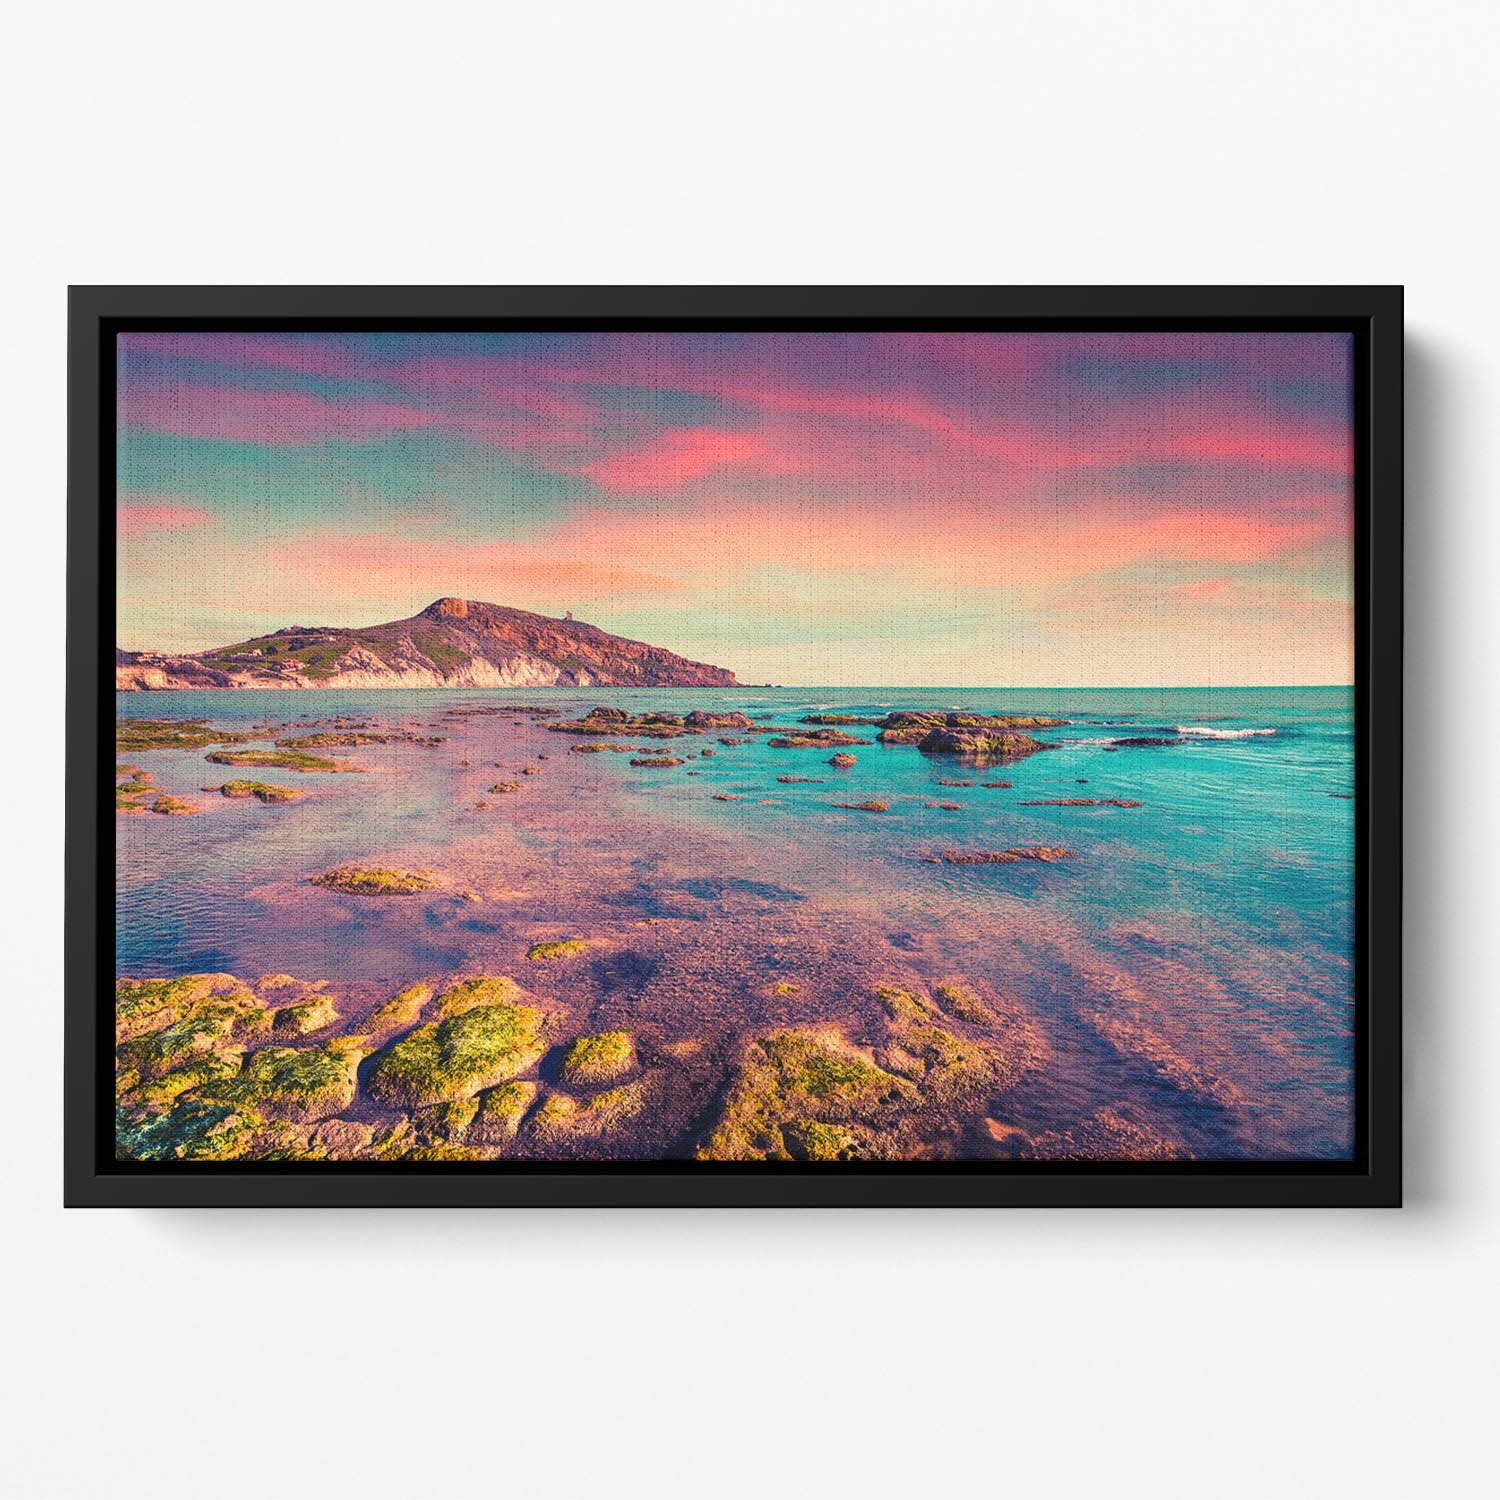 Spring sunset from the Giallonardo Floating Framed Canvas